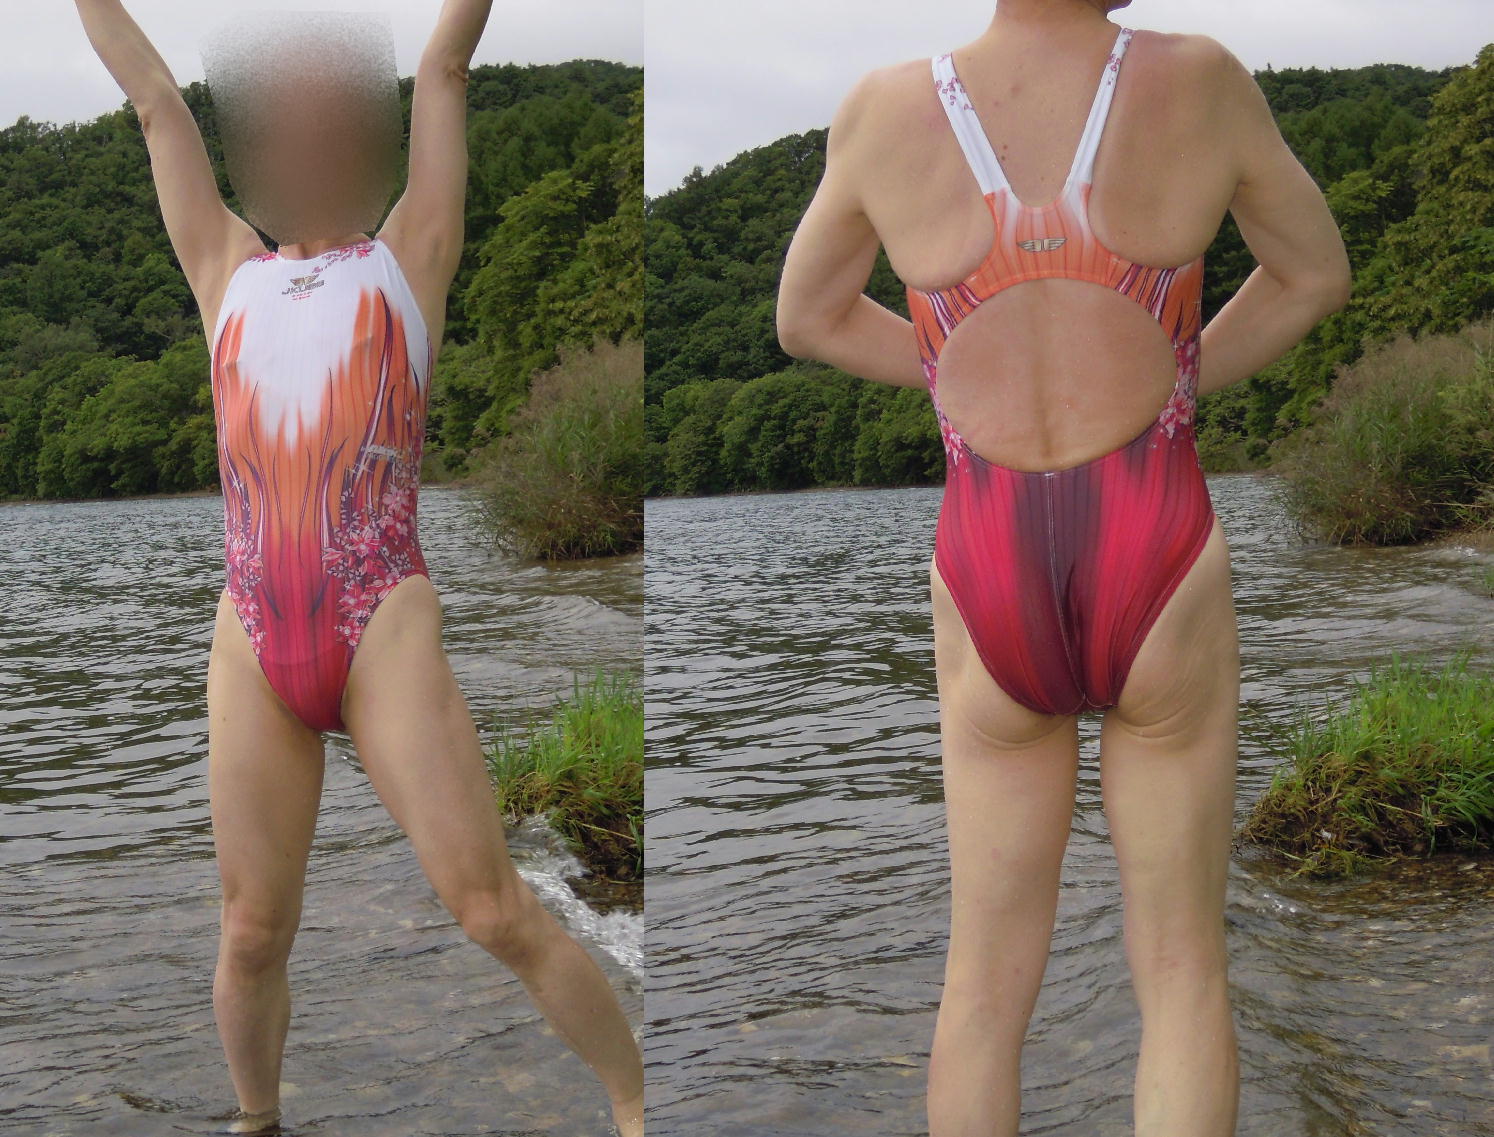 [男性] 女性用競泳水着画像掲示板へ投稿されたtomo様の女性用競泳水着画像 No.15999099350001